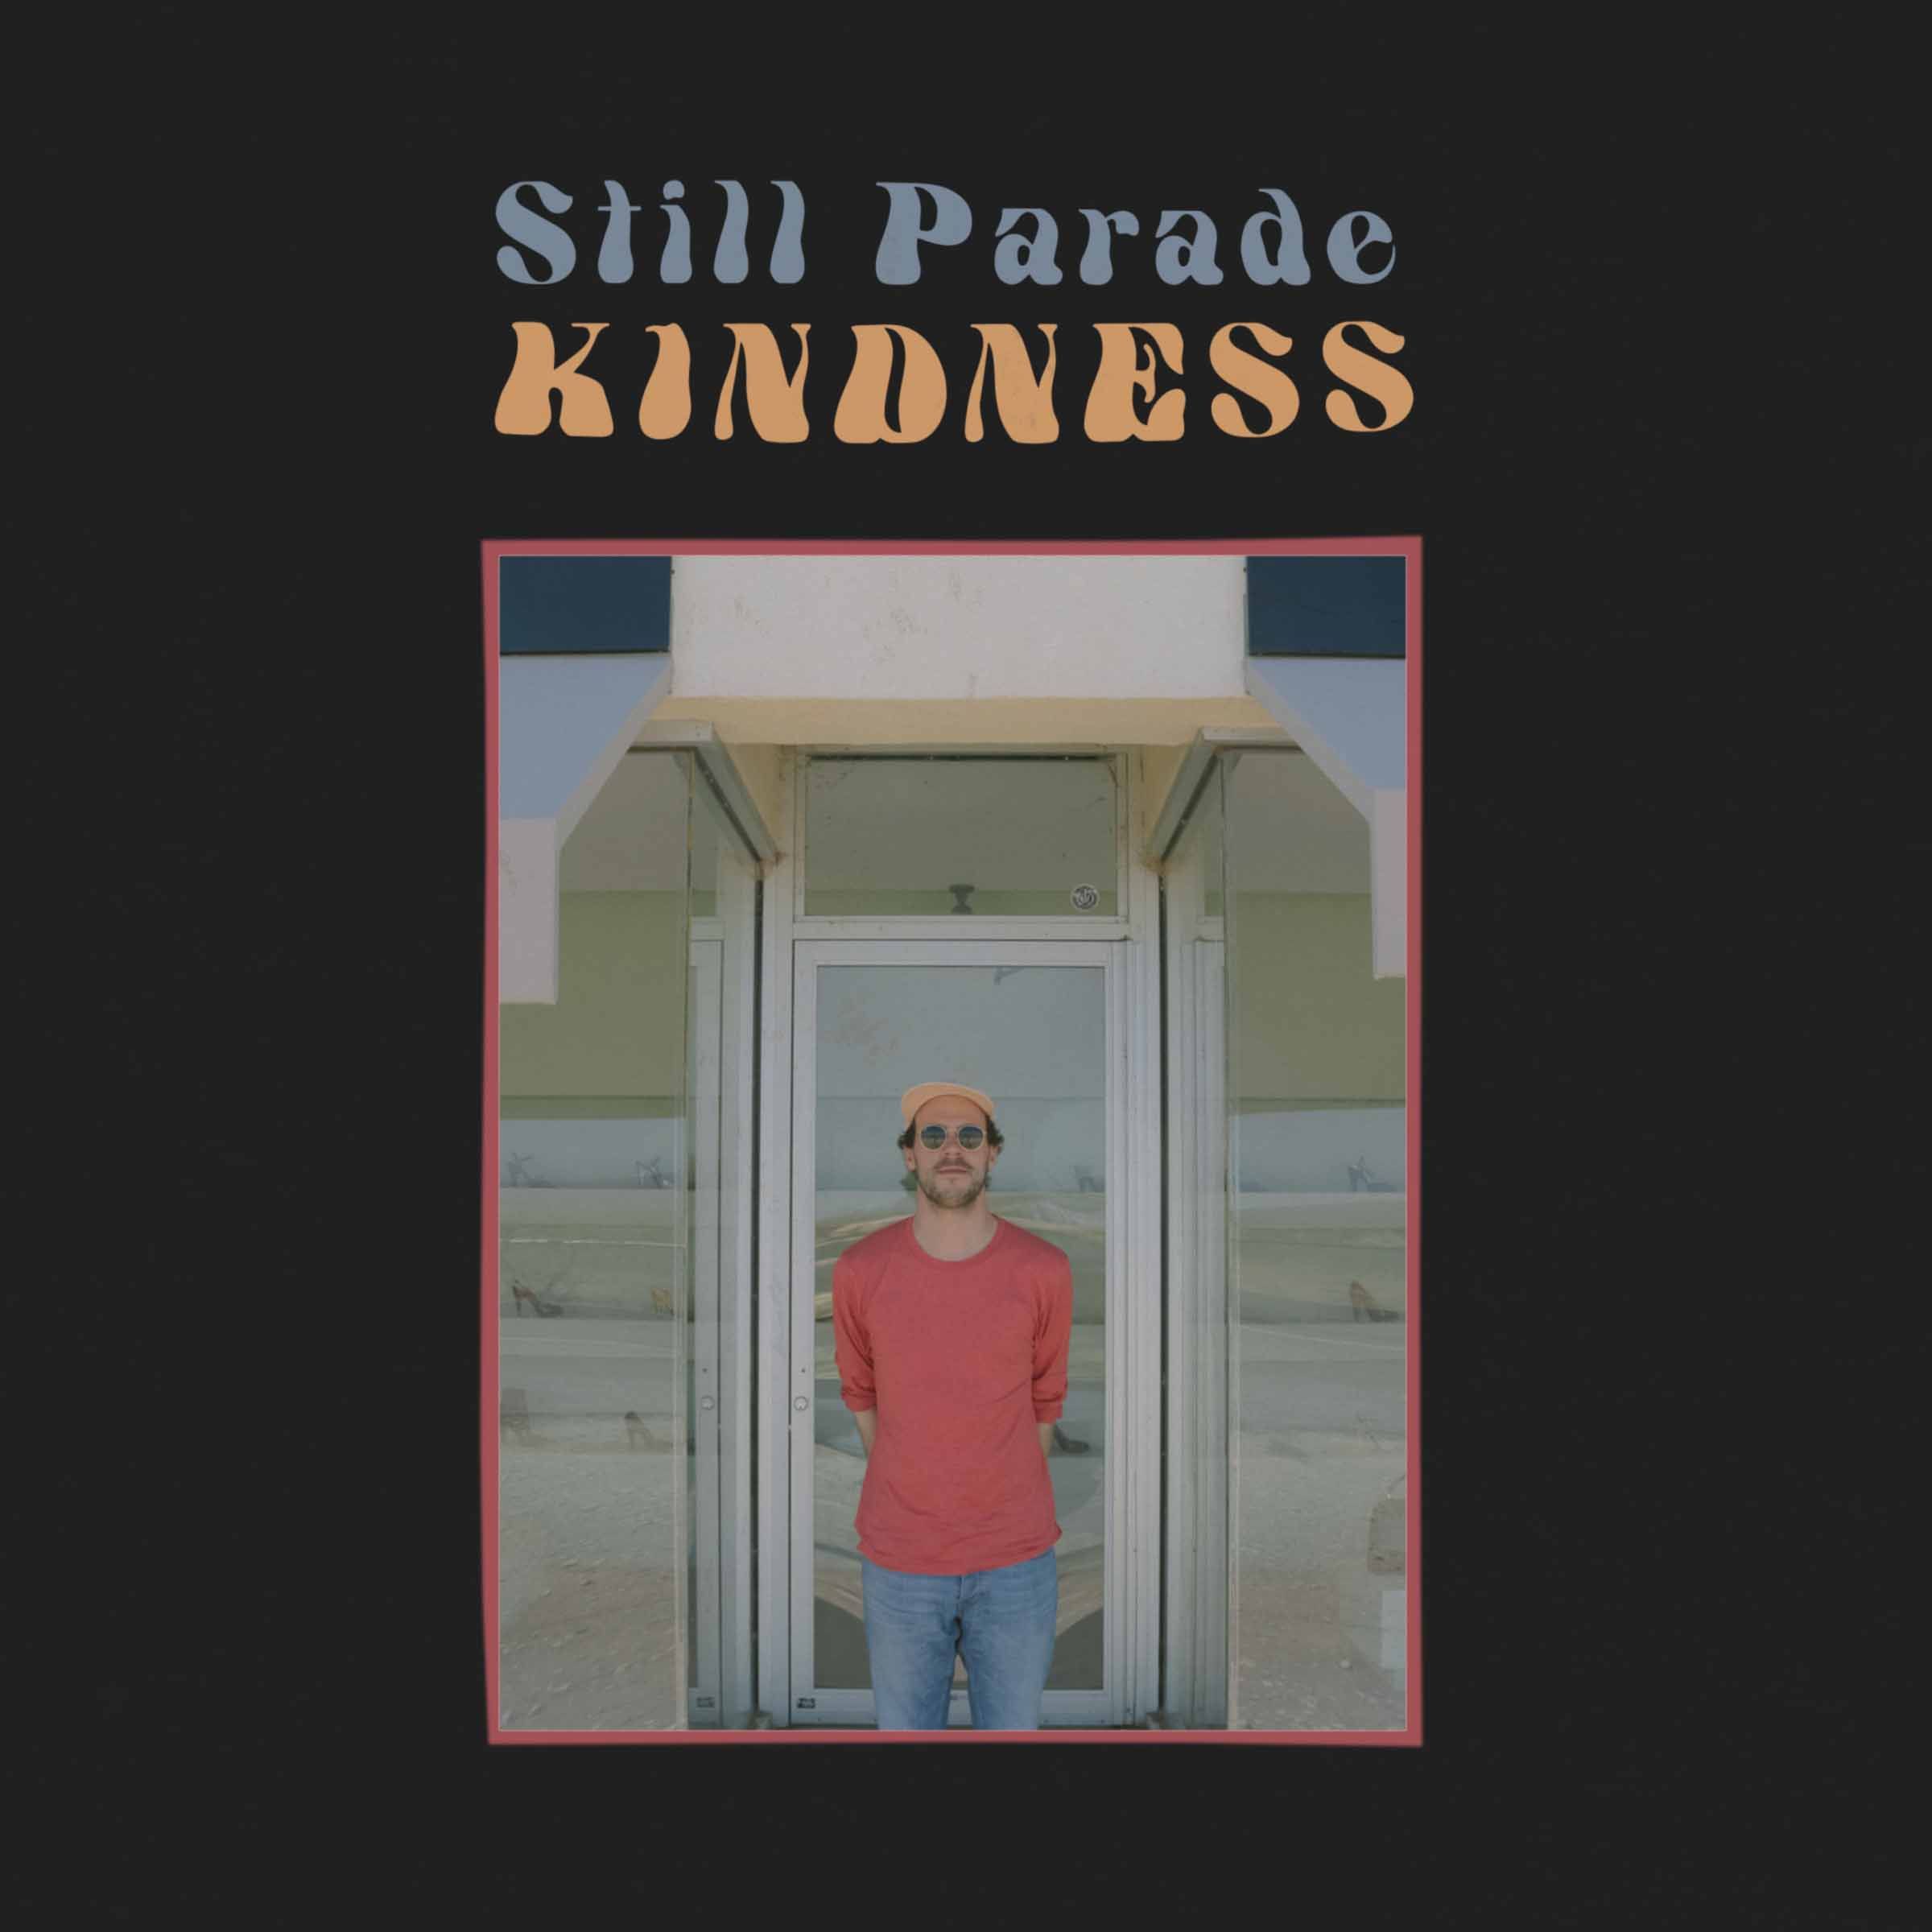 Still Parade – “Kindness”